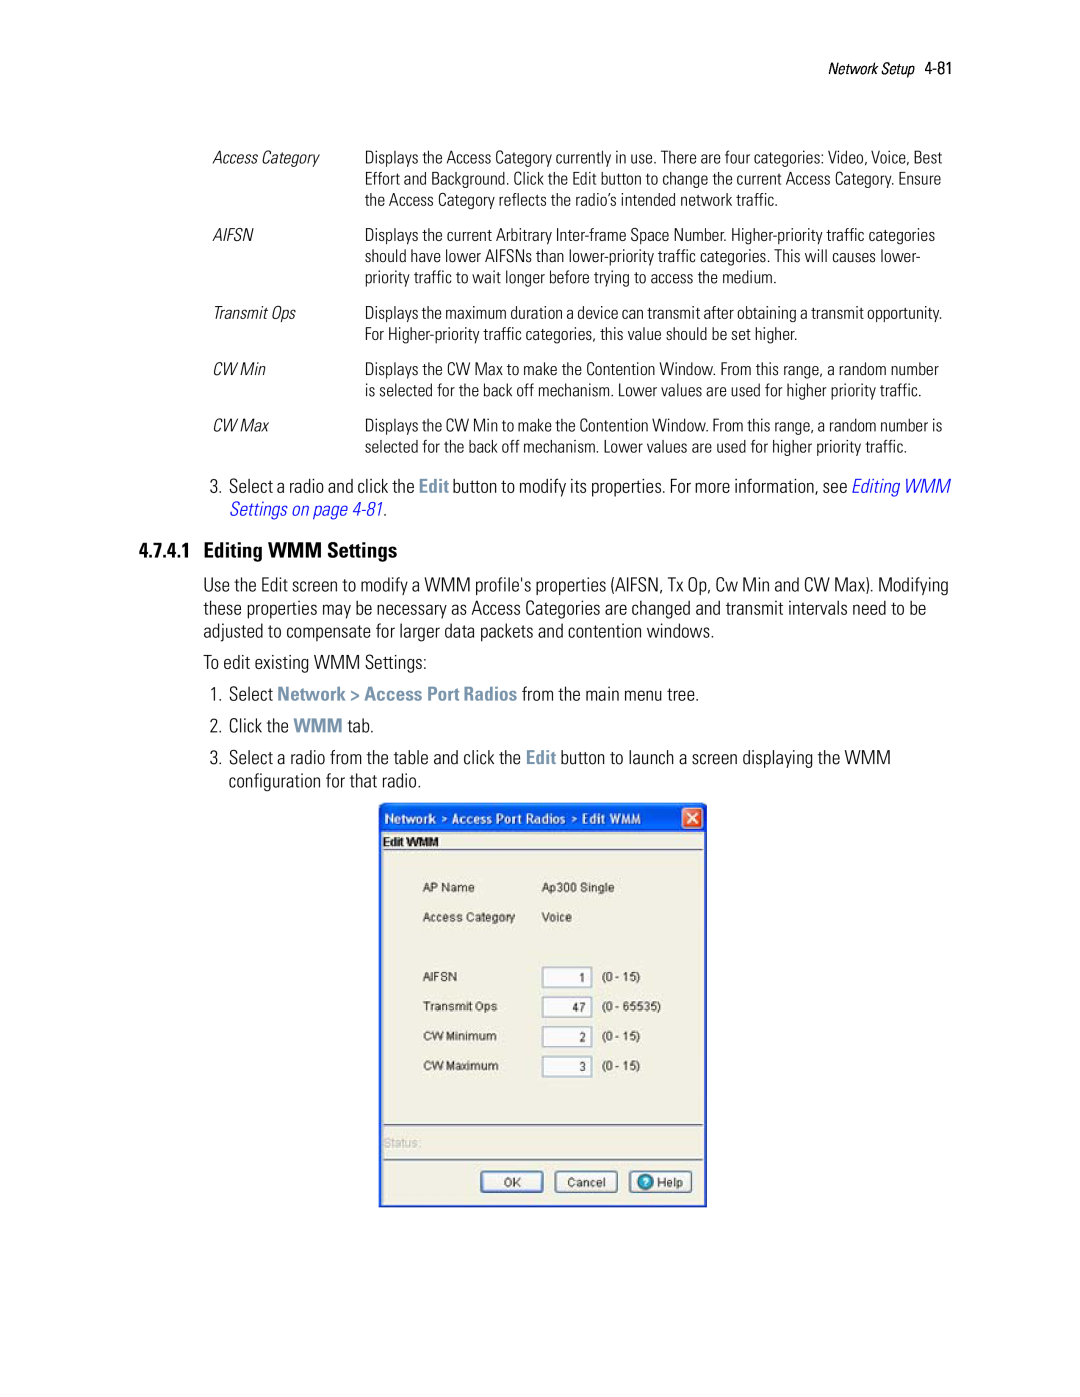 Motorola WS5100 manual 4.7.4.1Editing WMM Settings 